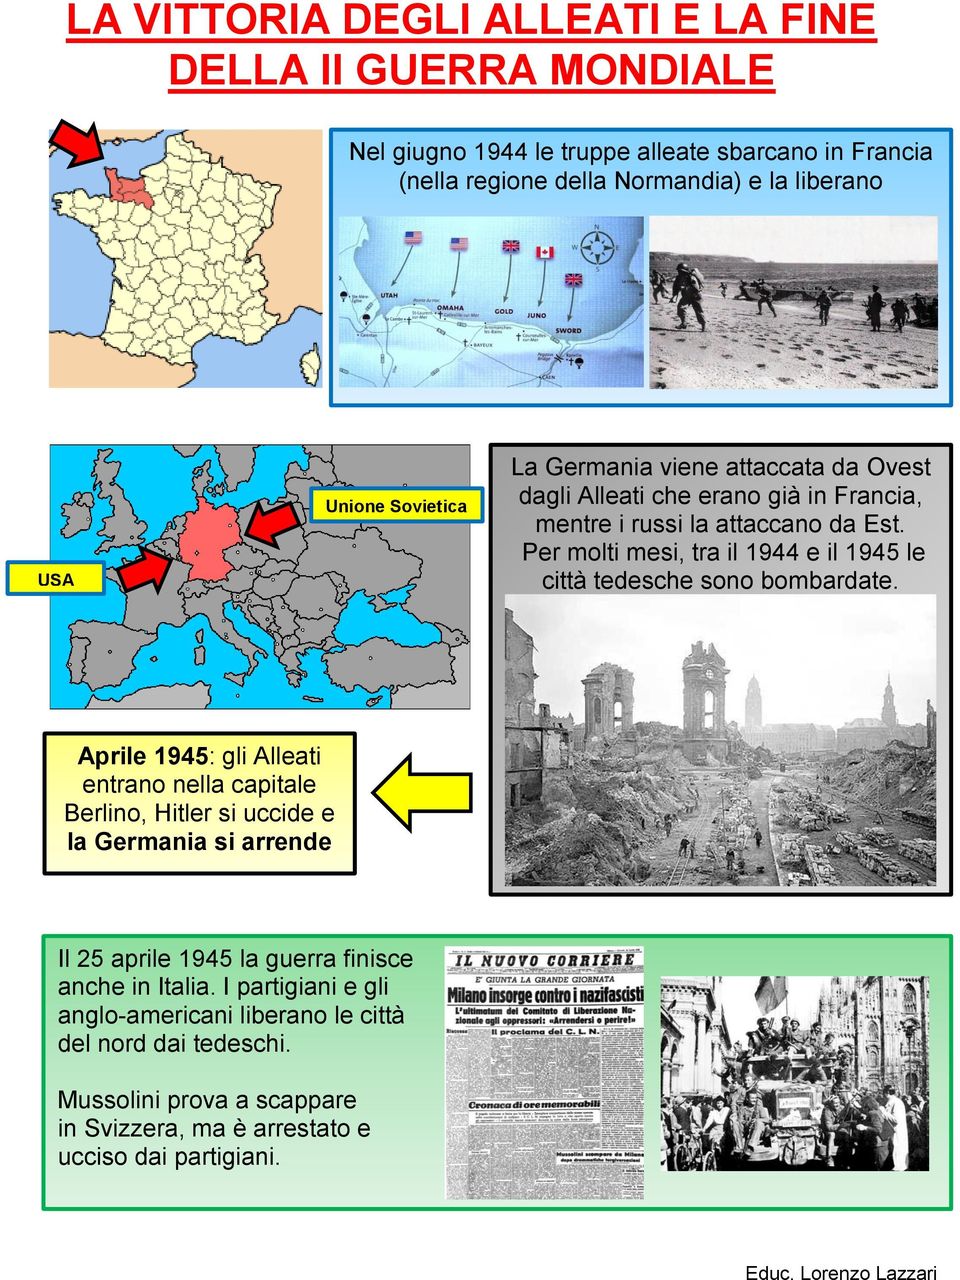 Per molti mesi, tra il 1944 e il 1945 le città tedesche sono bombardate.